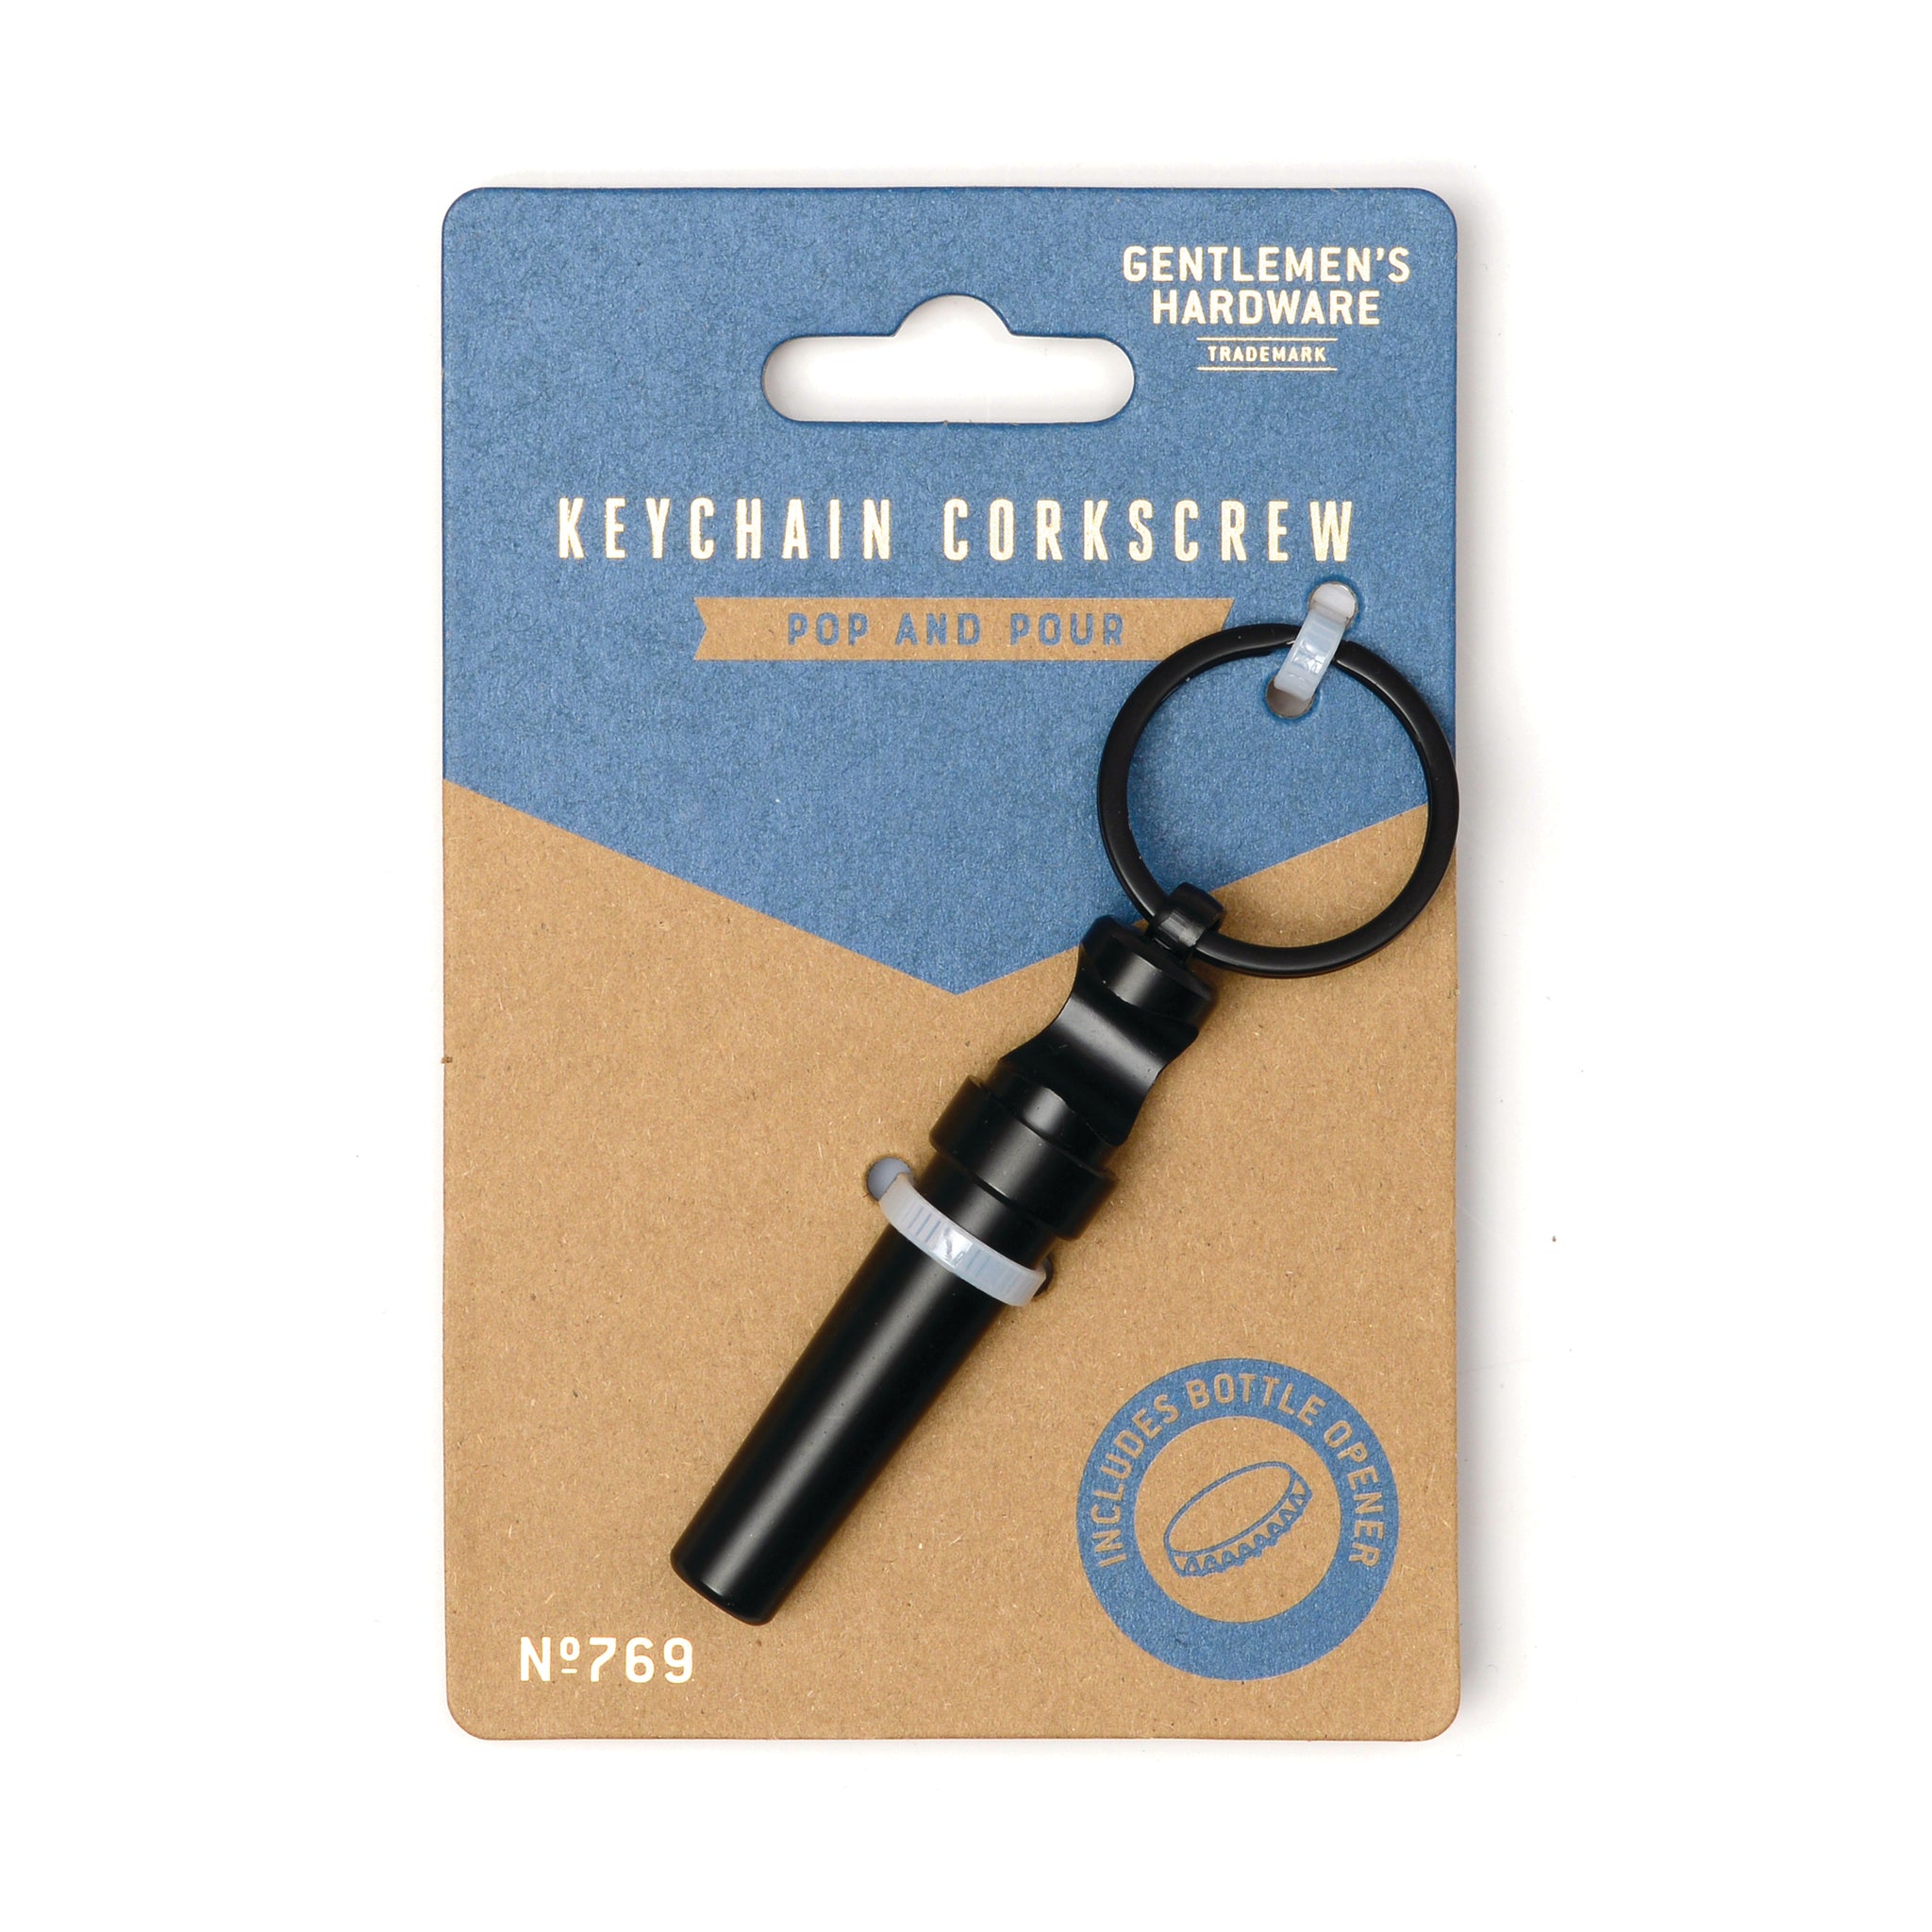 Keychain Corkscrew – Gentlemen's Hardware